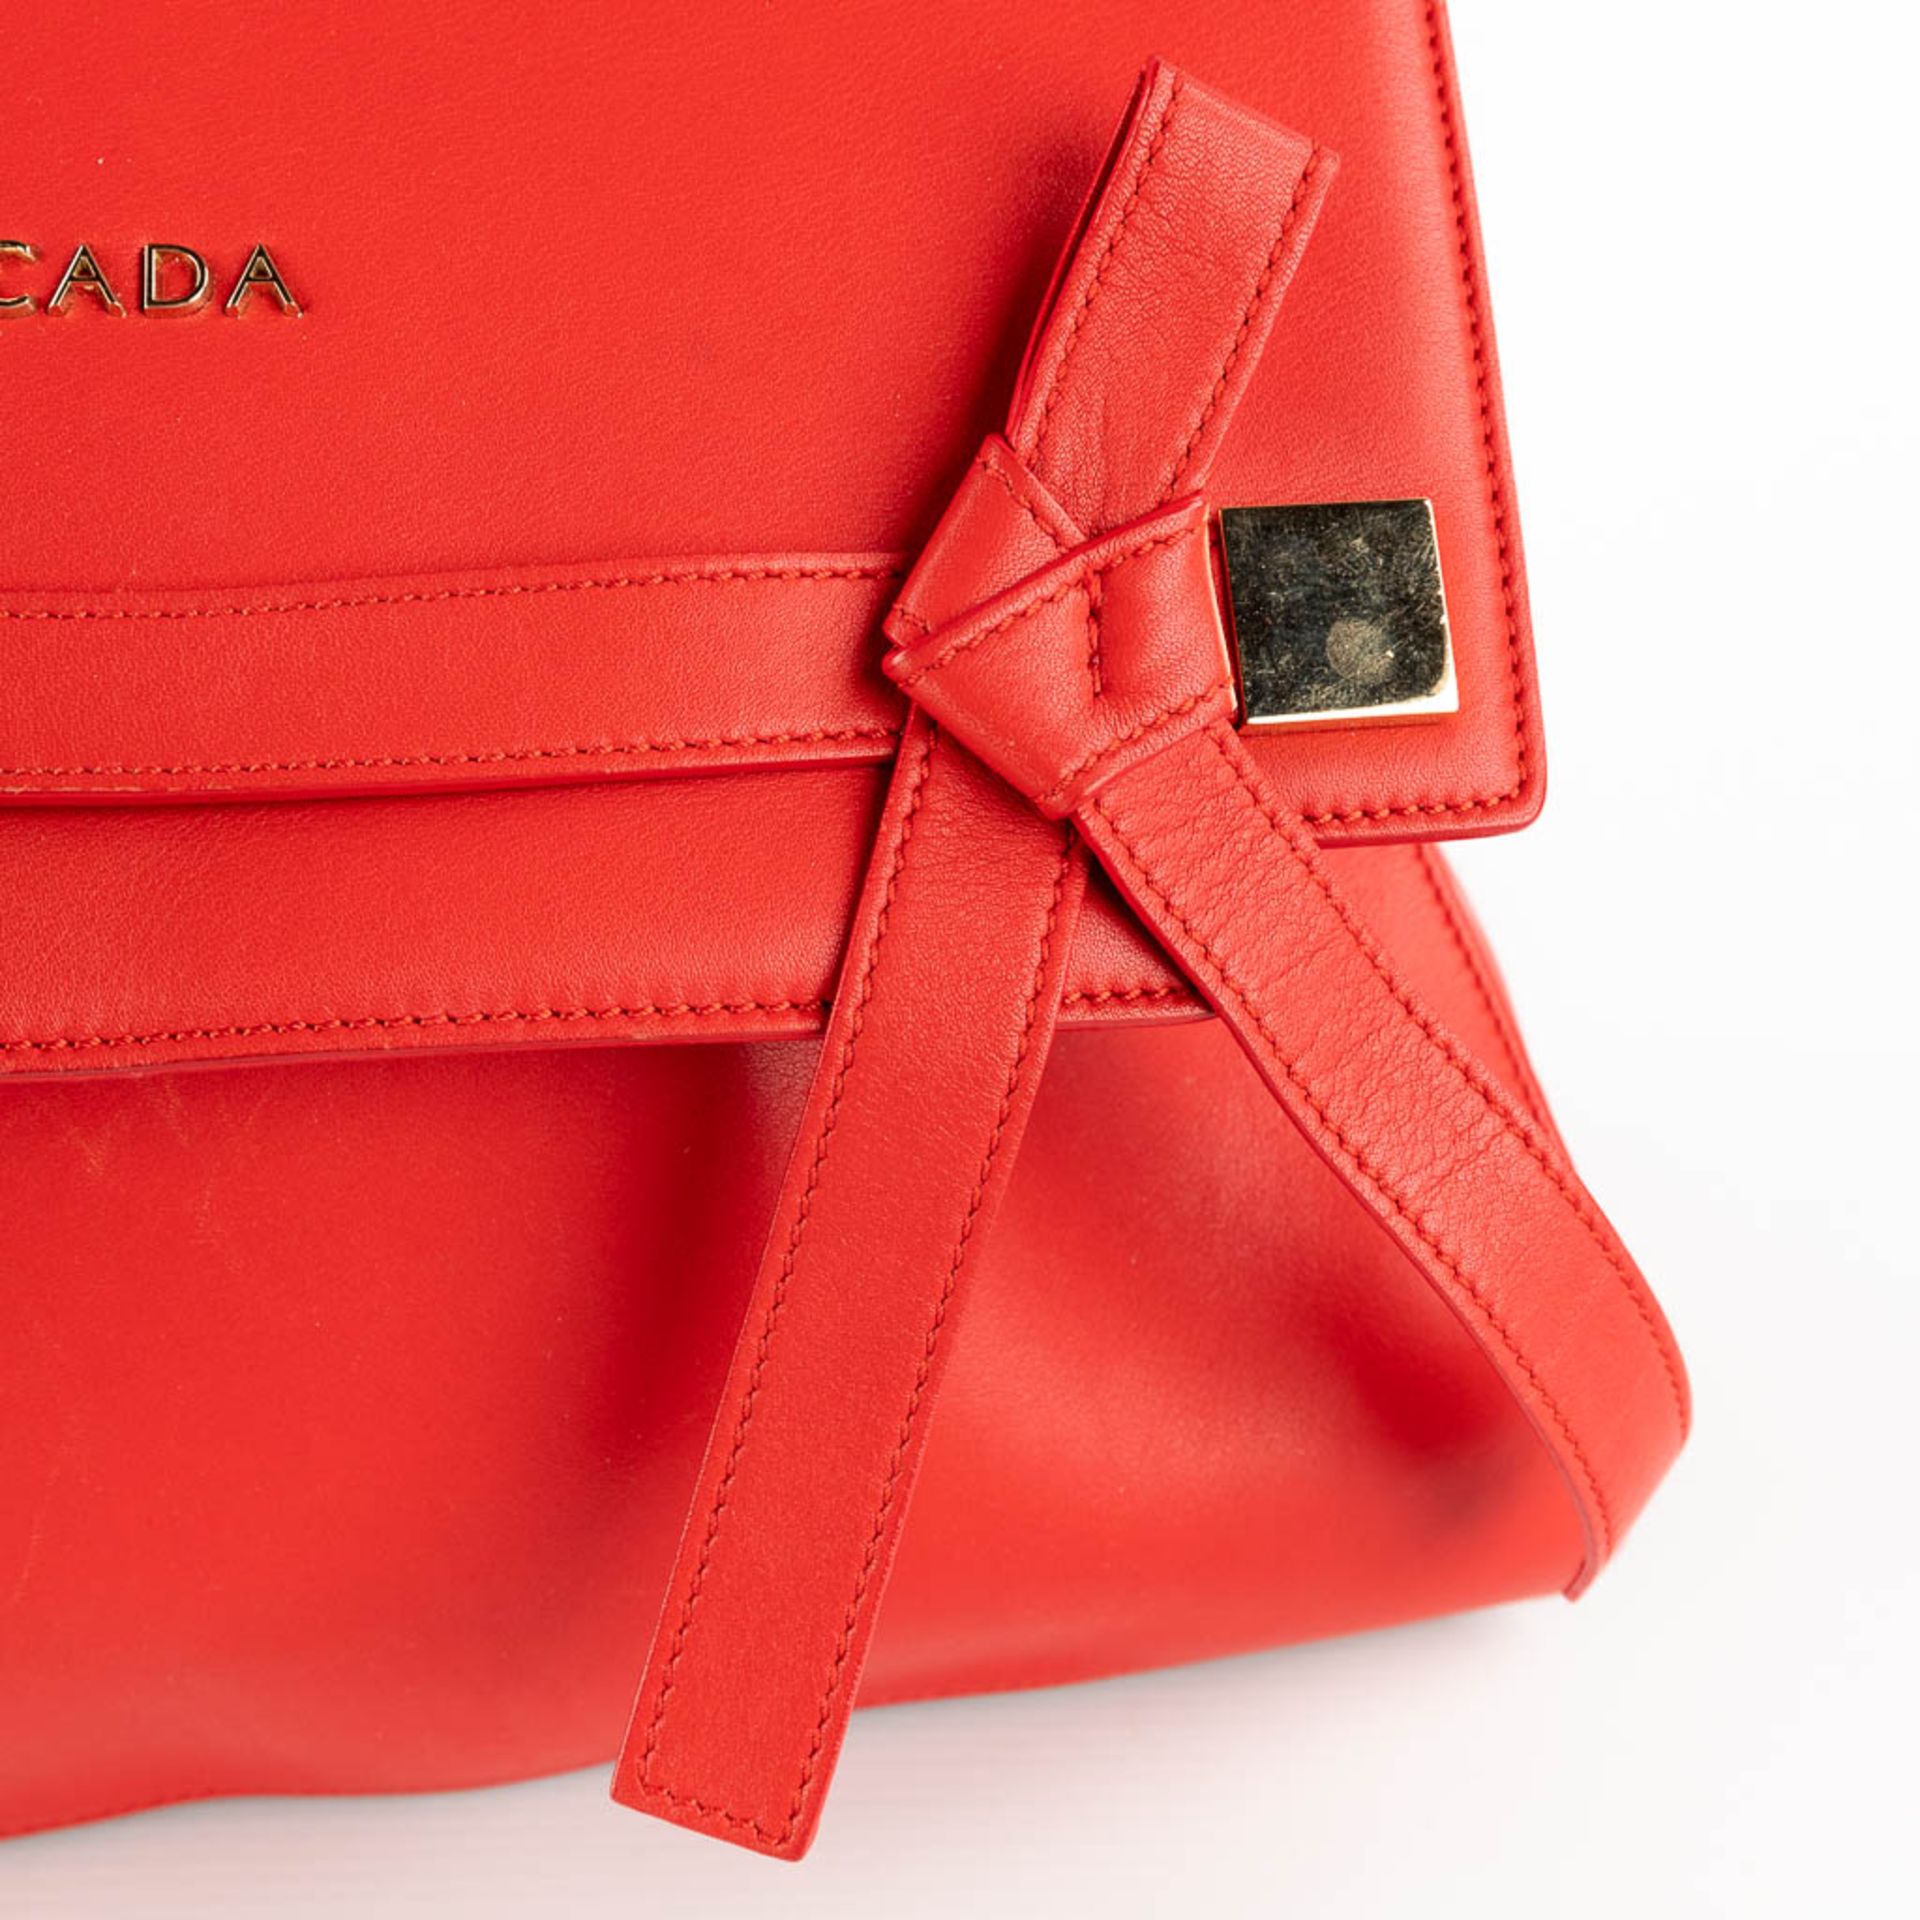 Escada, a handbag made of red leather. (W:33 x H:28 cm) - Image 12 of 17